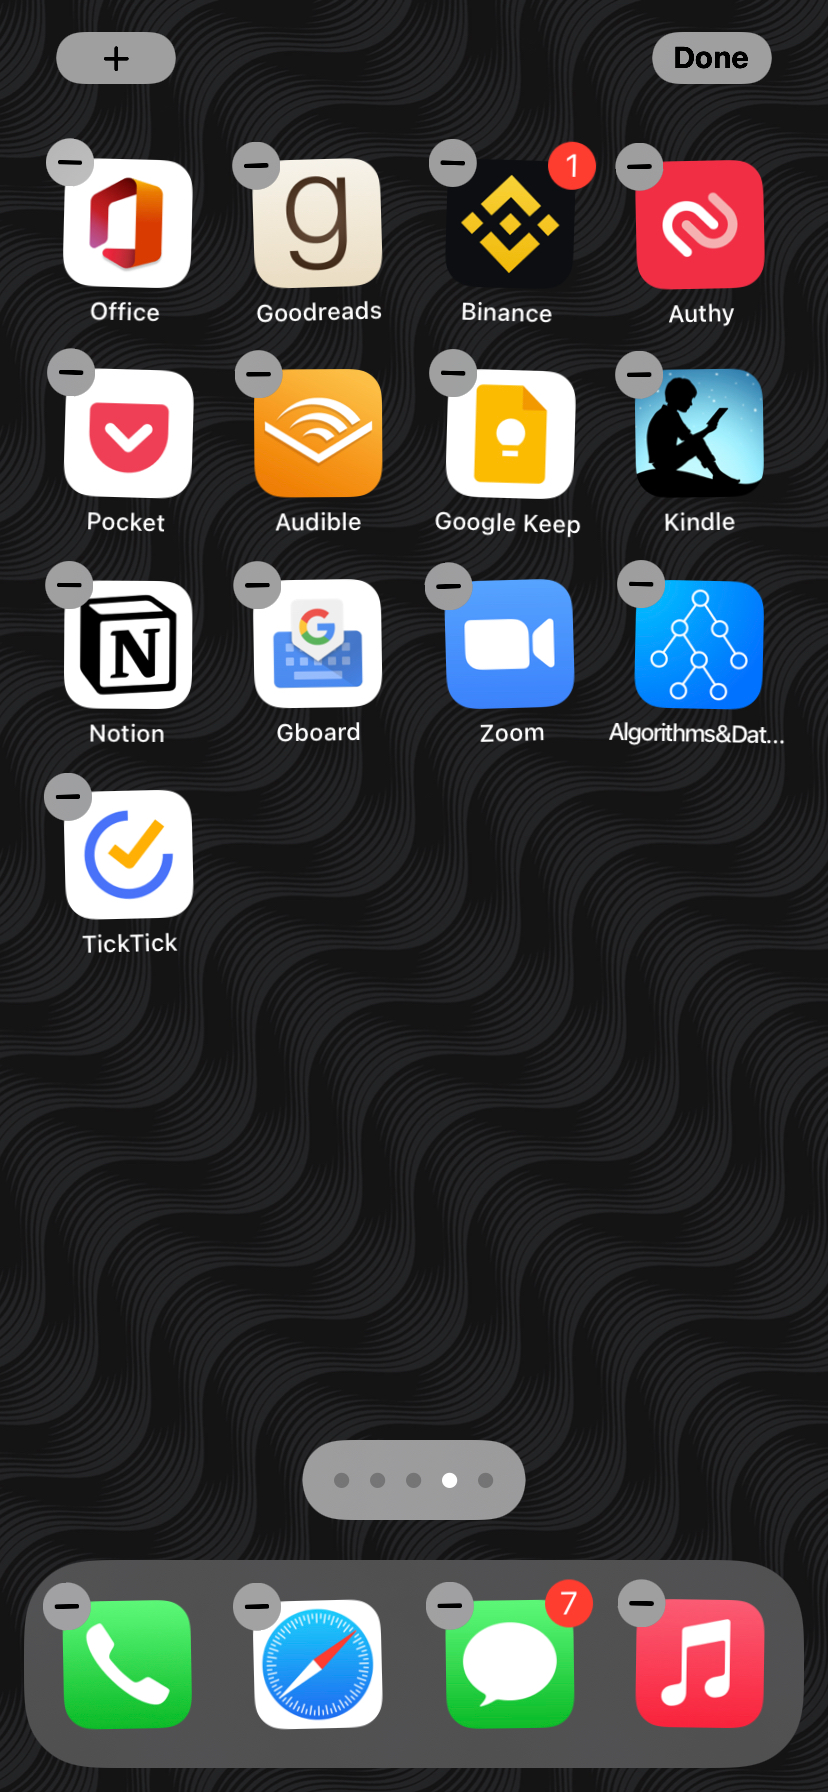 Jiggle mode in iOS